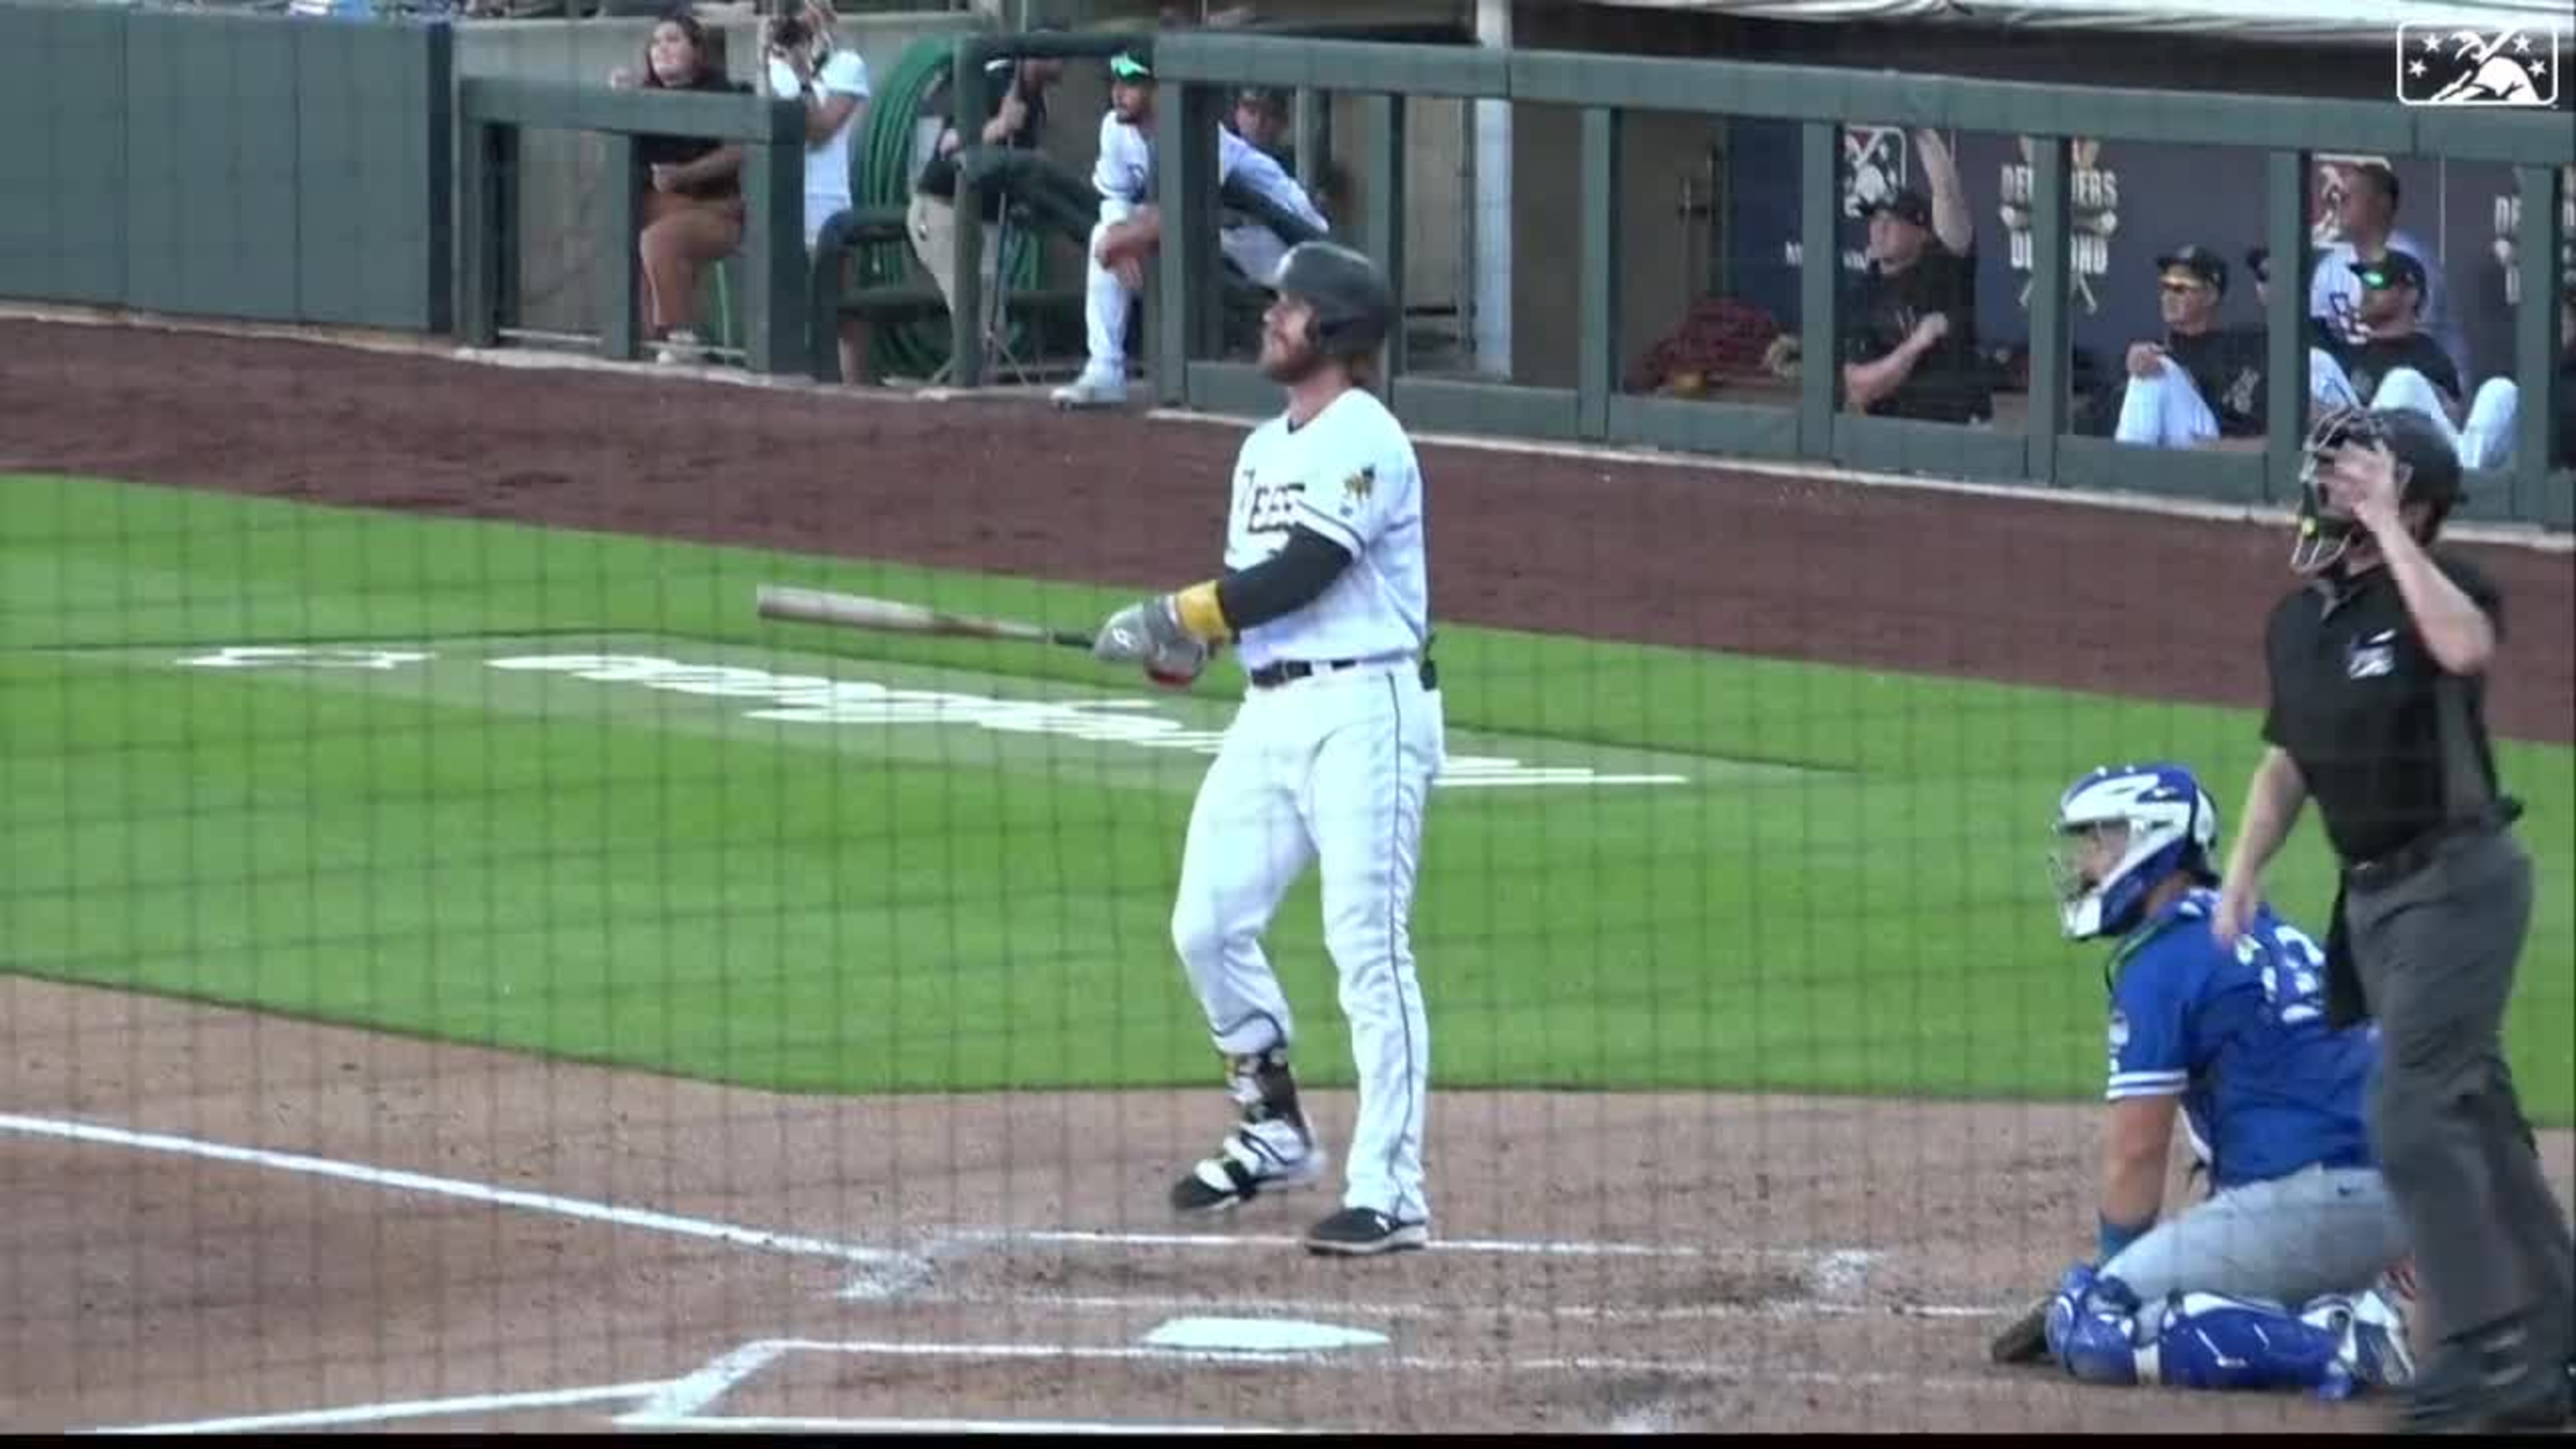 Jake Lamb - MLB Videos and Highlights